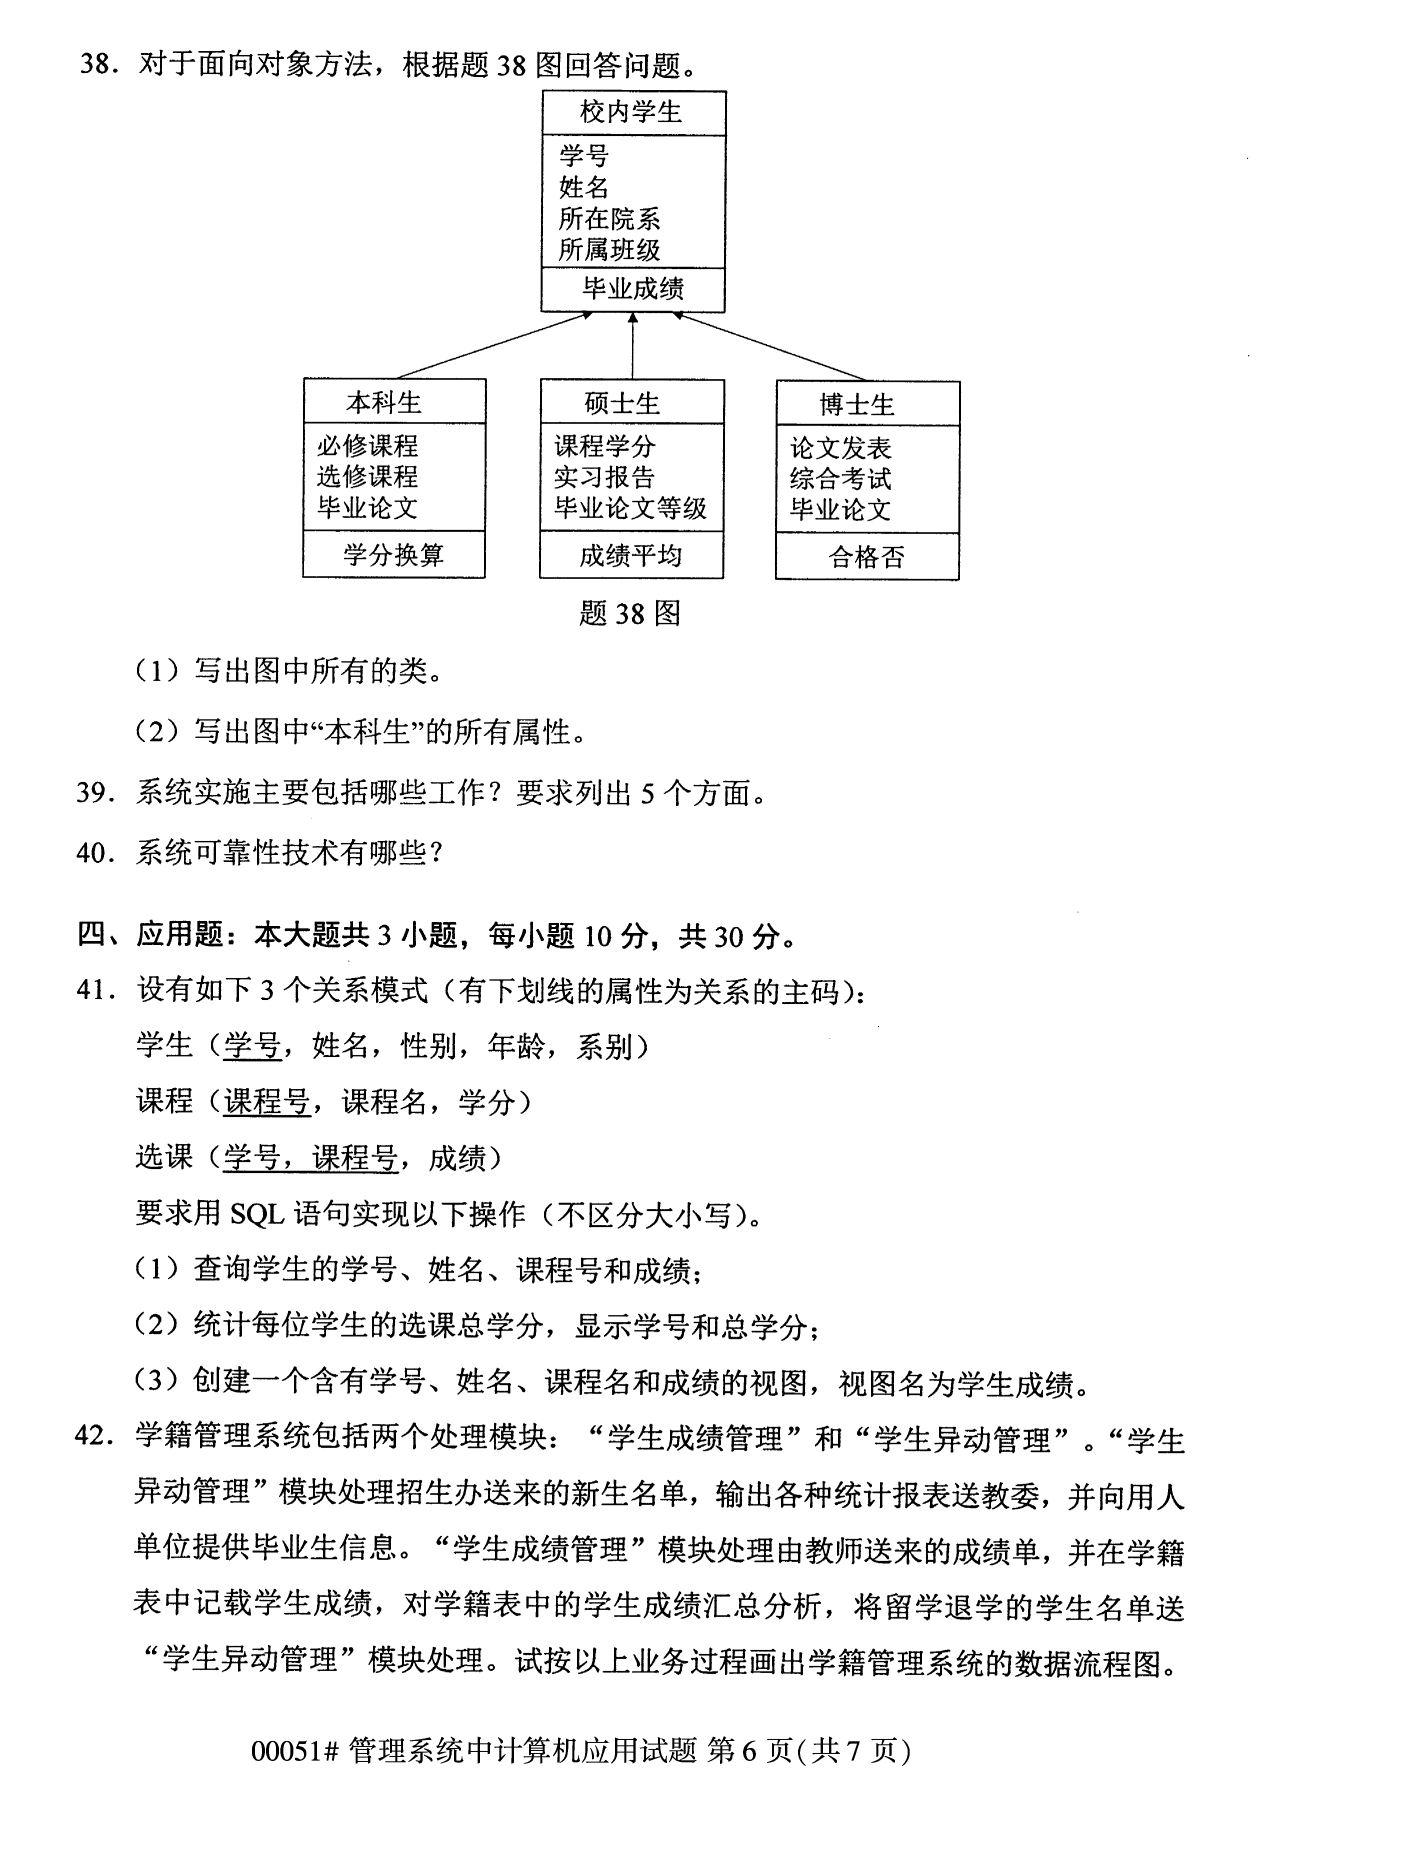 2022年10月全国统考课程云南自考管理系统中计算机应用试卷